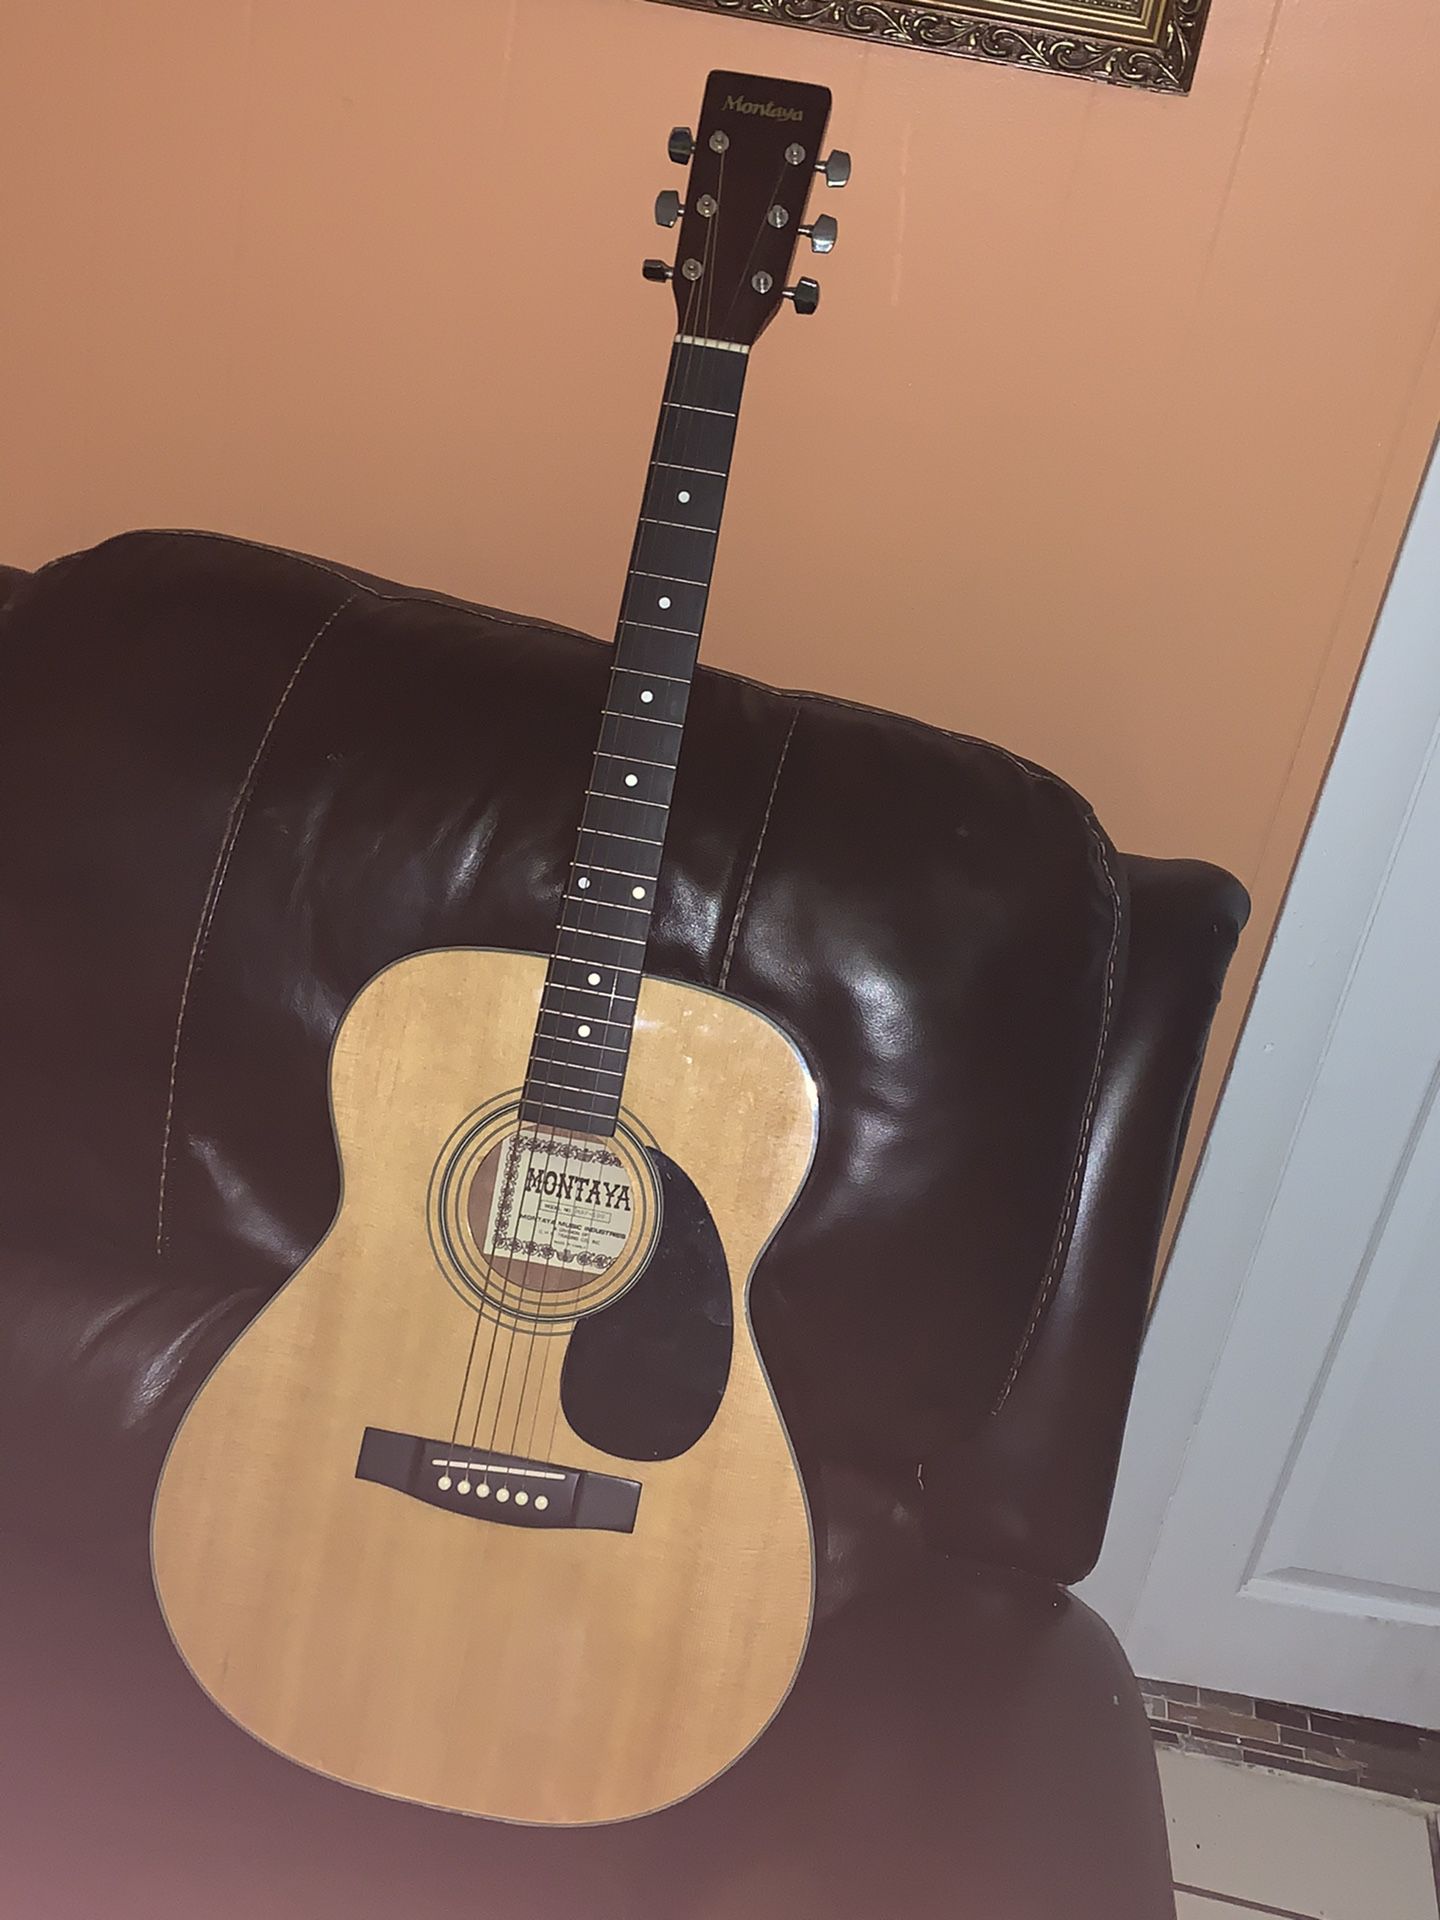 montaya maf-100 guitar